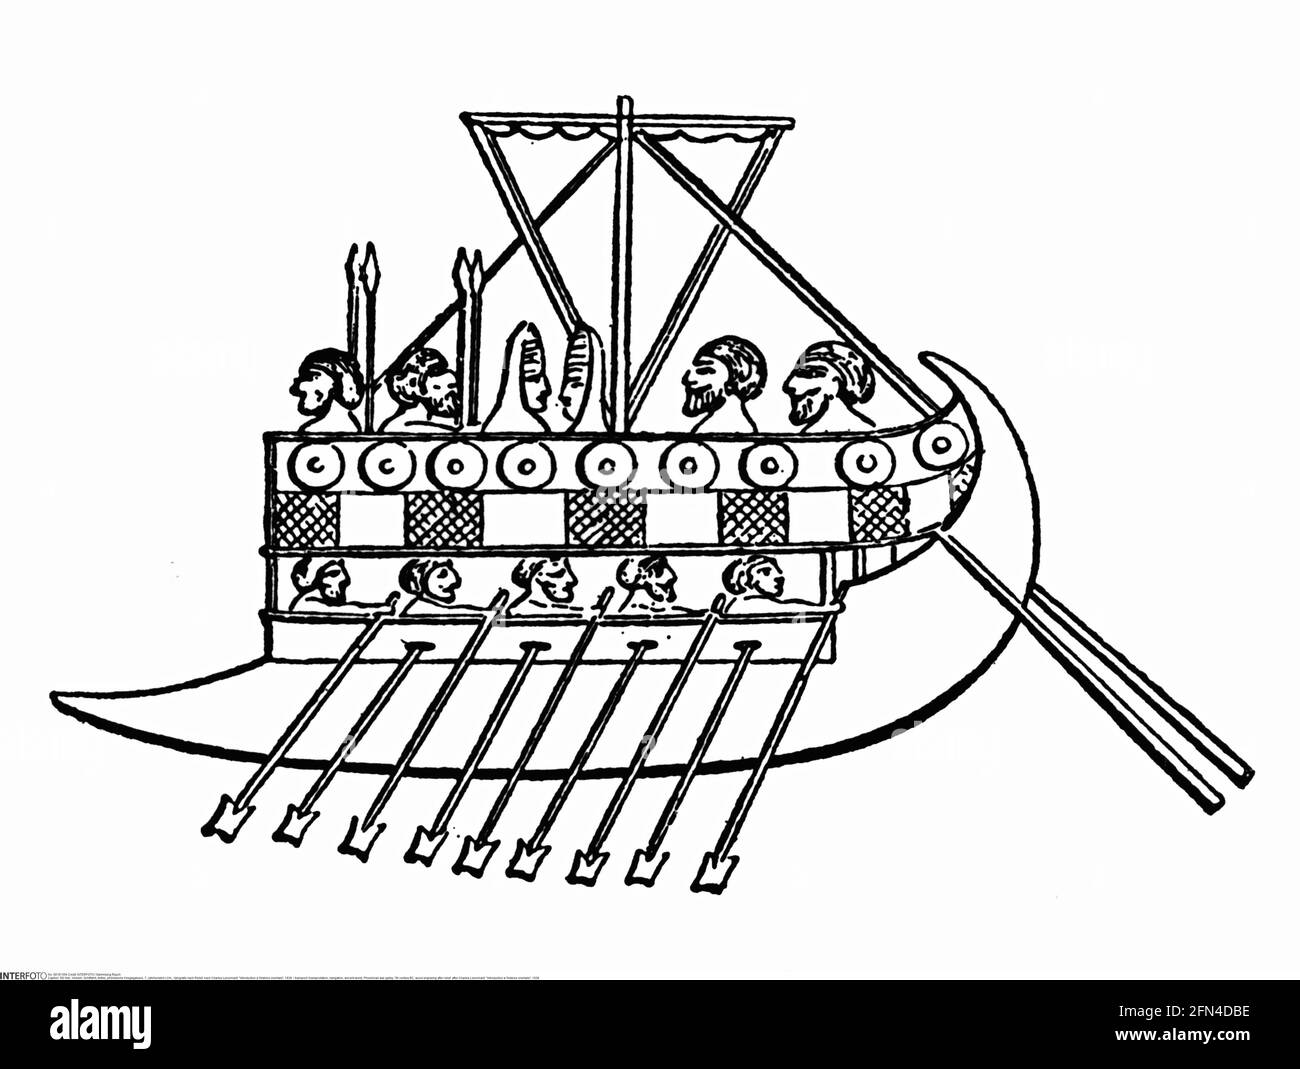 Transport / transport, navigation, monde antique, cuisine de guerre phénicienne, 7ème siècle av. J.-C., INFO-AUTORISATION-DROITS-SUPPLÉMENTAIRES-NON-DISPONIBLE Banque D'Images